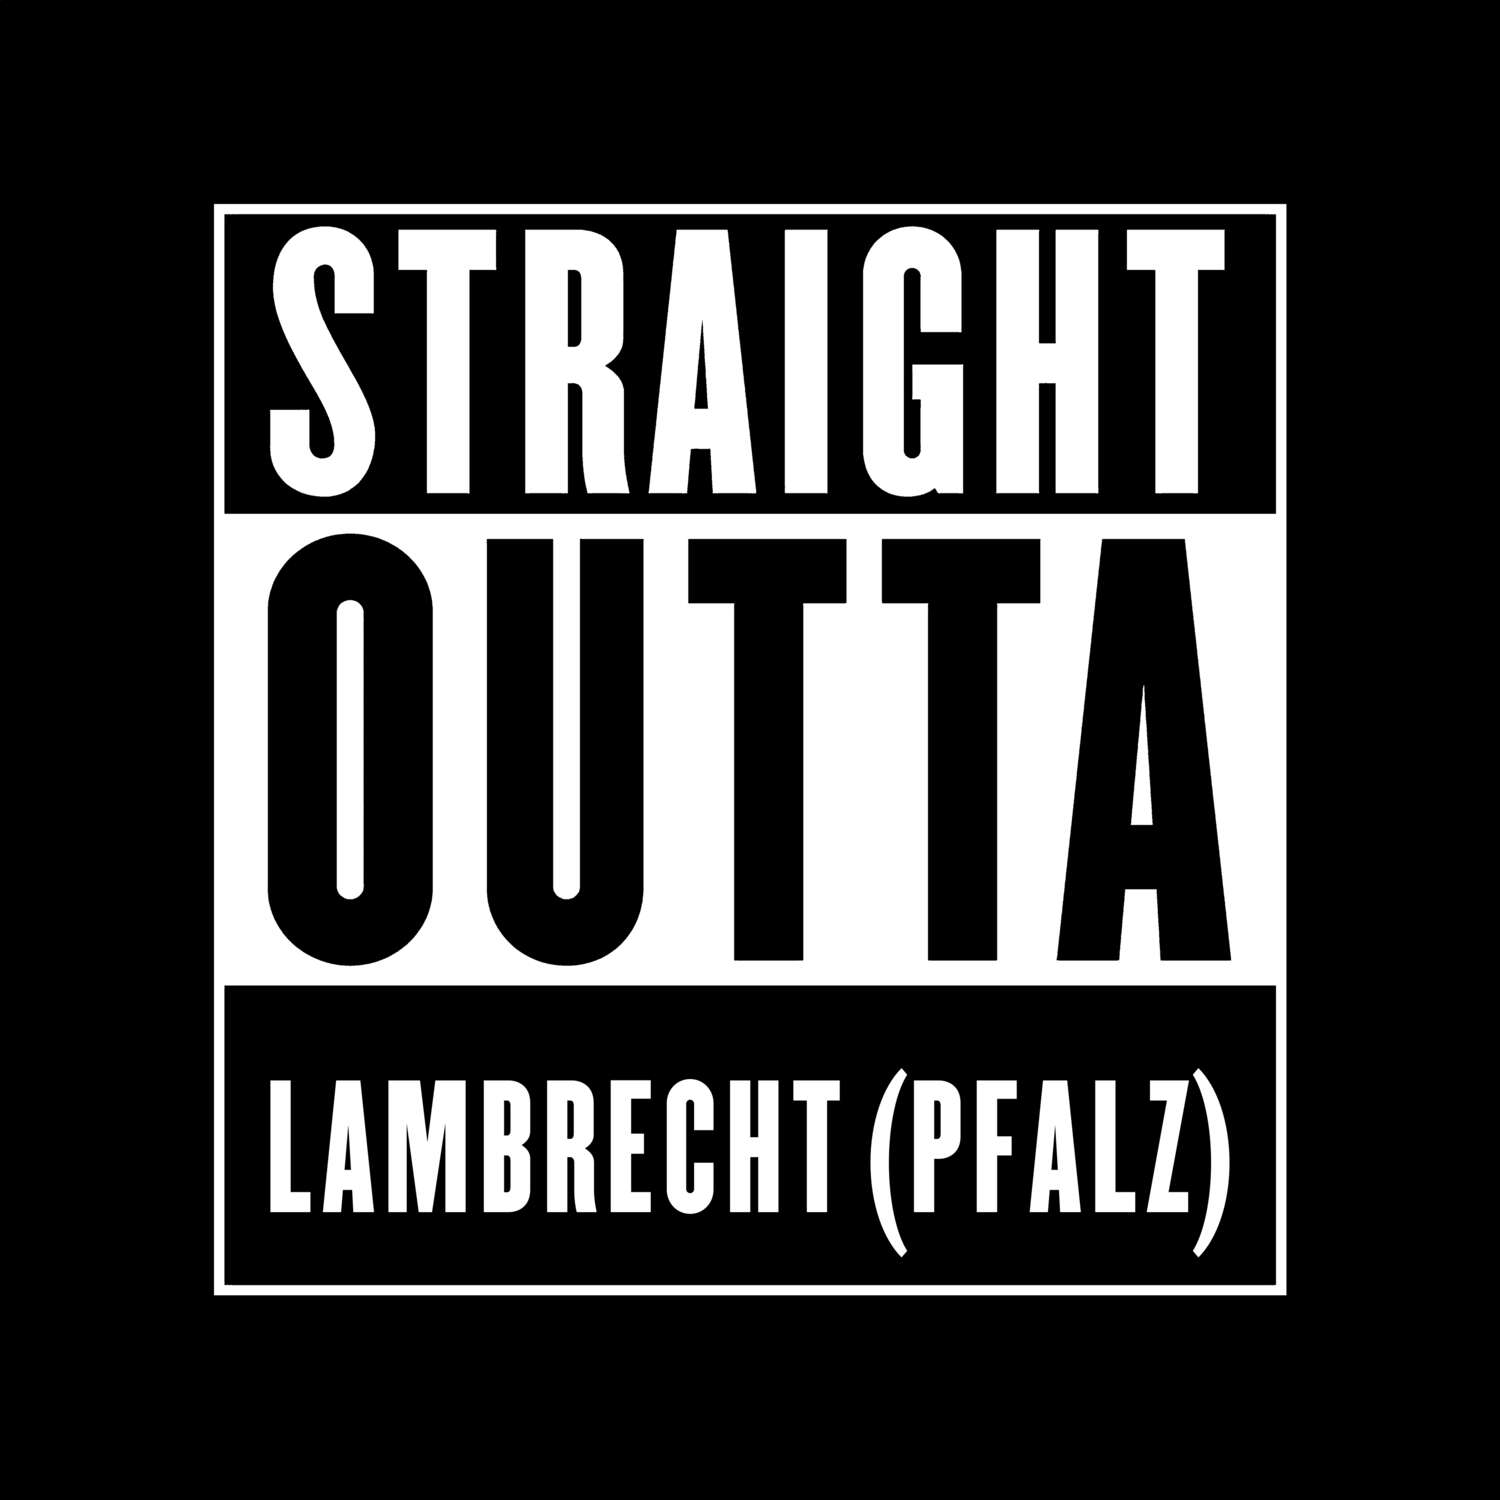 Lambrecht (Pfalz) T-Shirt »Straight Outta«